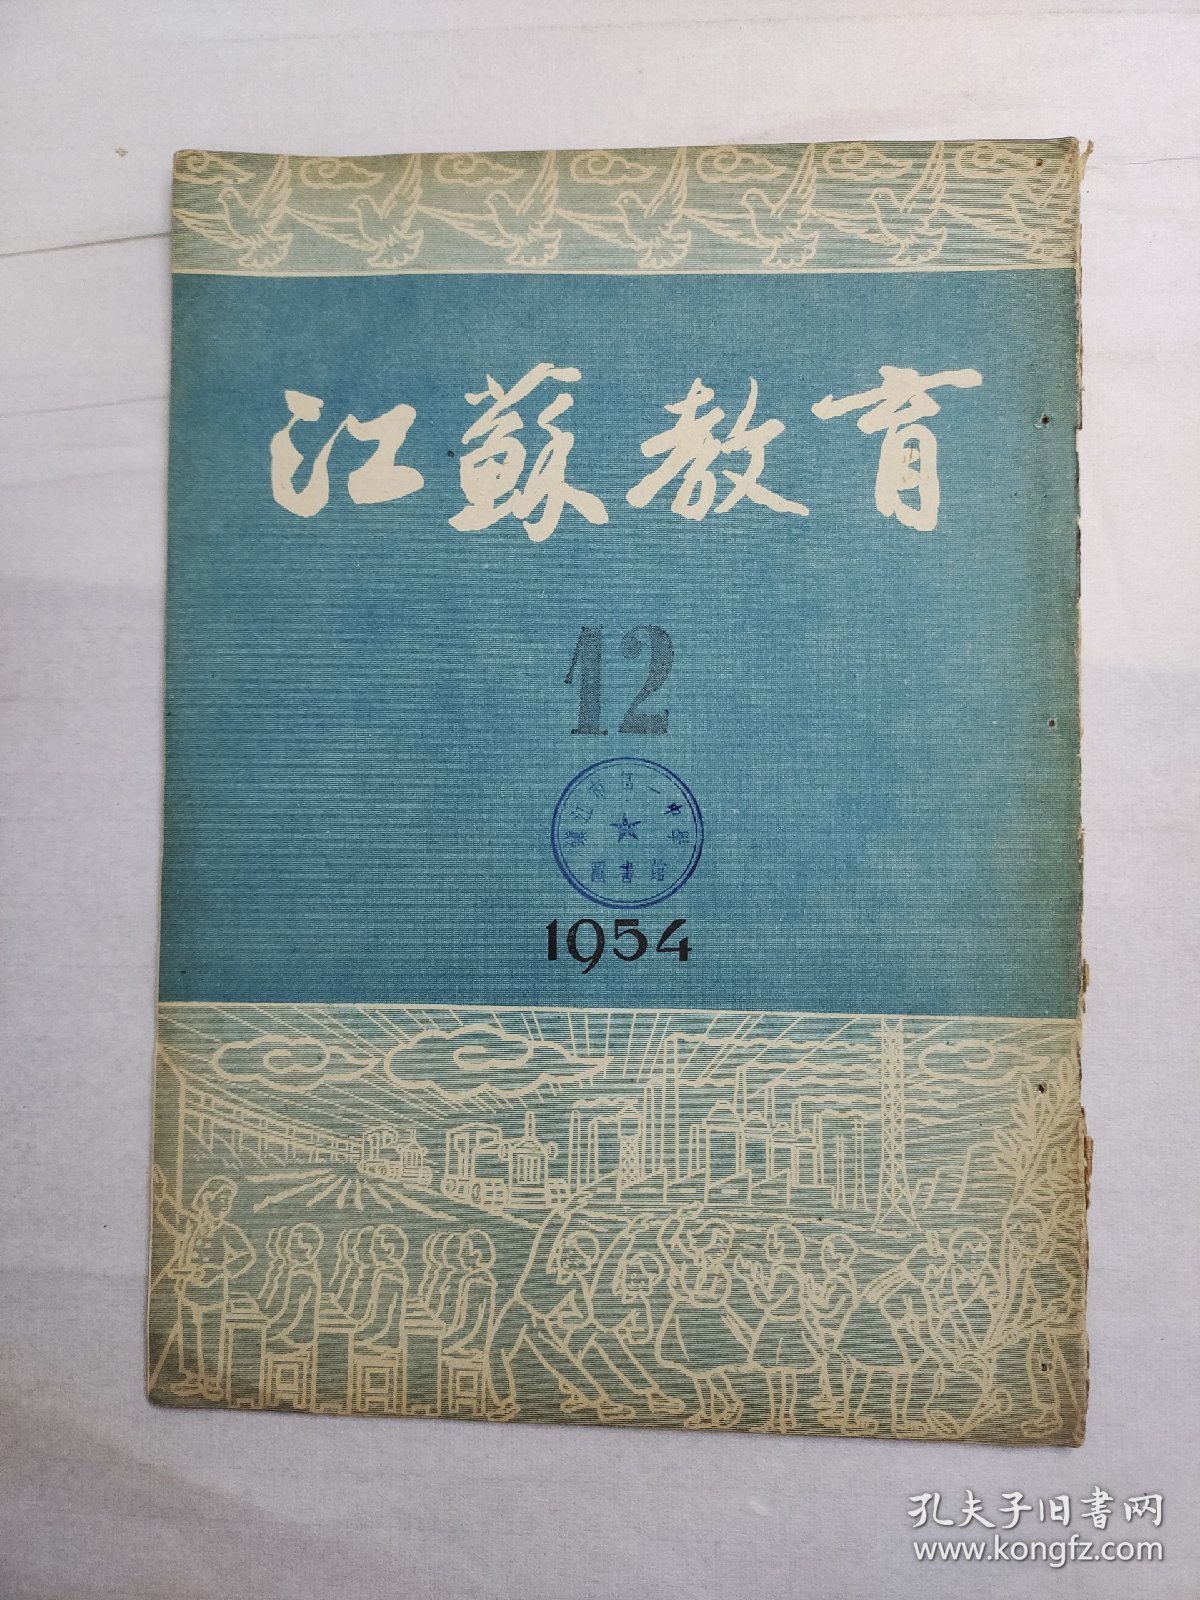 【期刊】江苏教育（半月刊） ，1954年第十二期，1954年6月25日出版，江苏人民出版社出版。